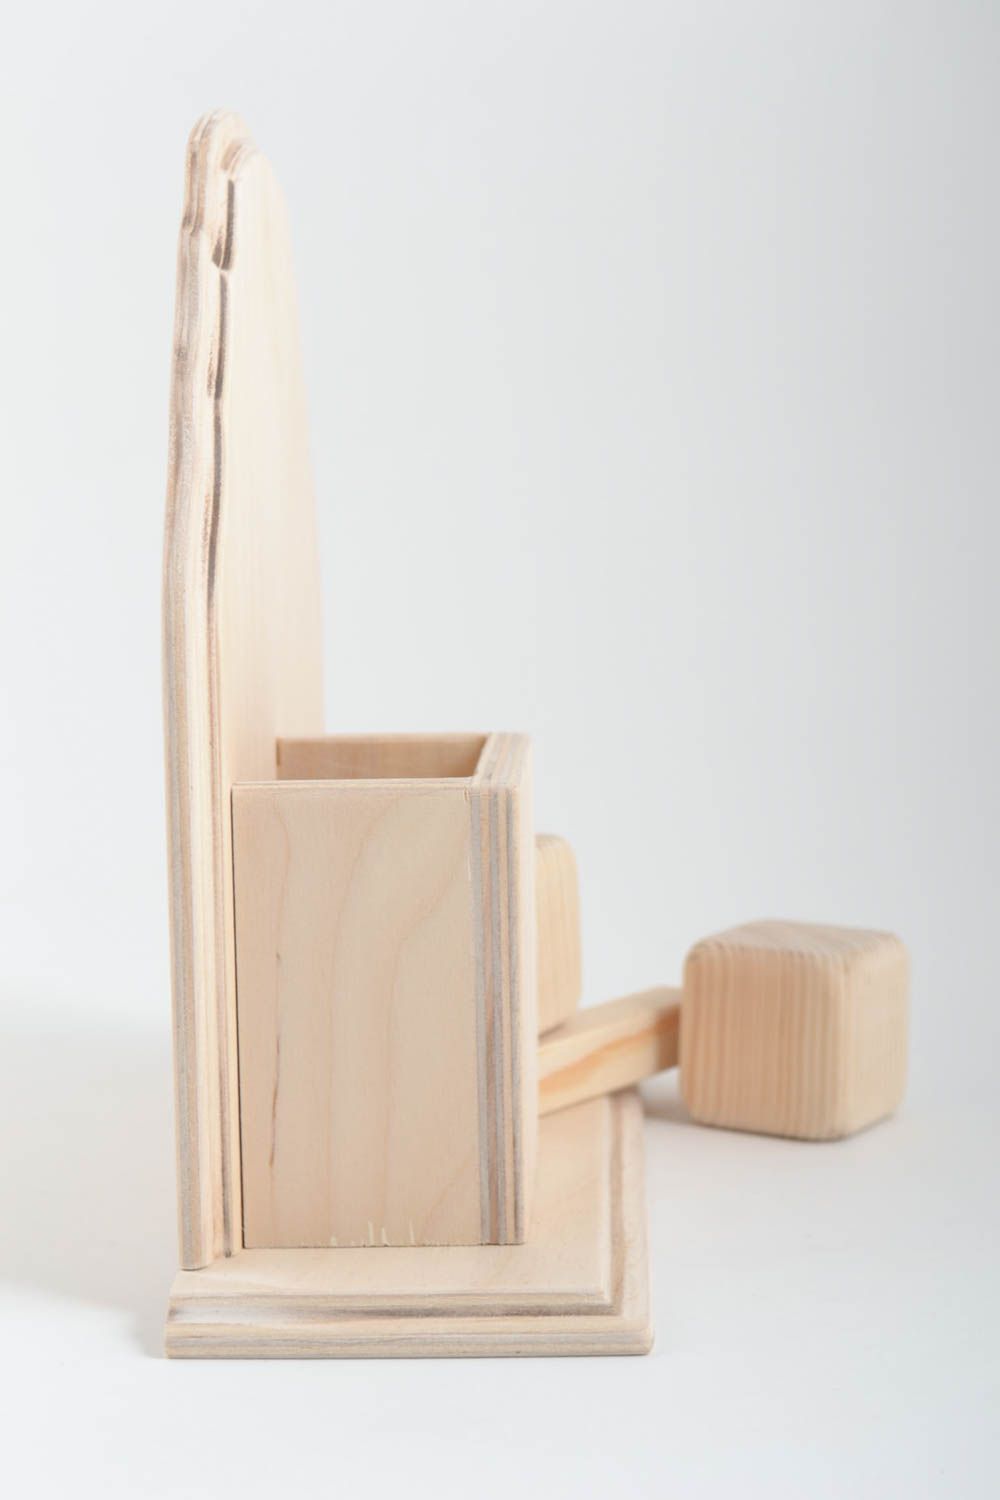 Unusual handmade wooden blank organizer wooden craft art supplies gift ideas photo 2